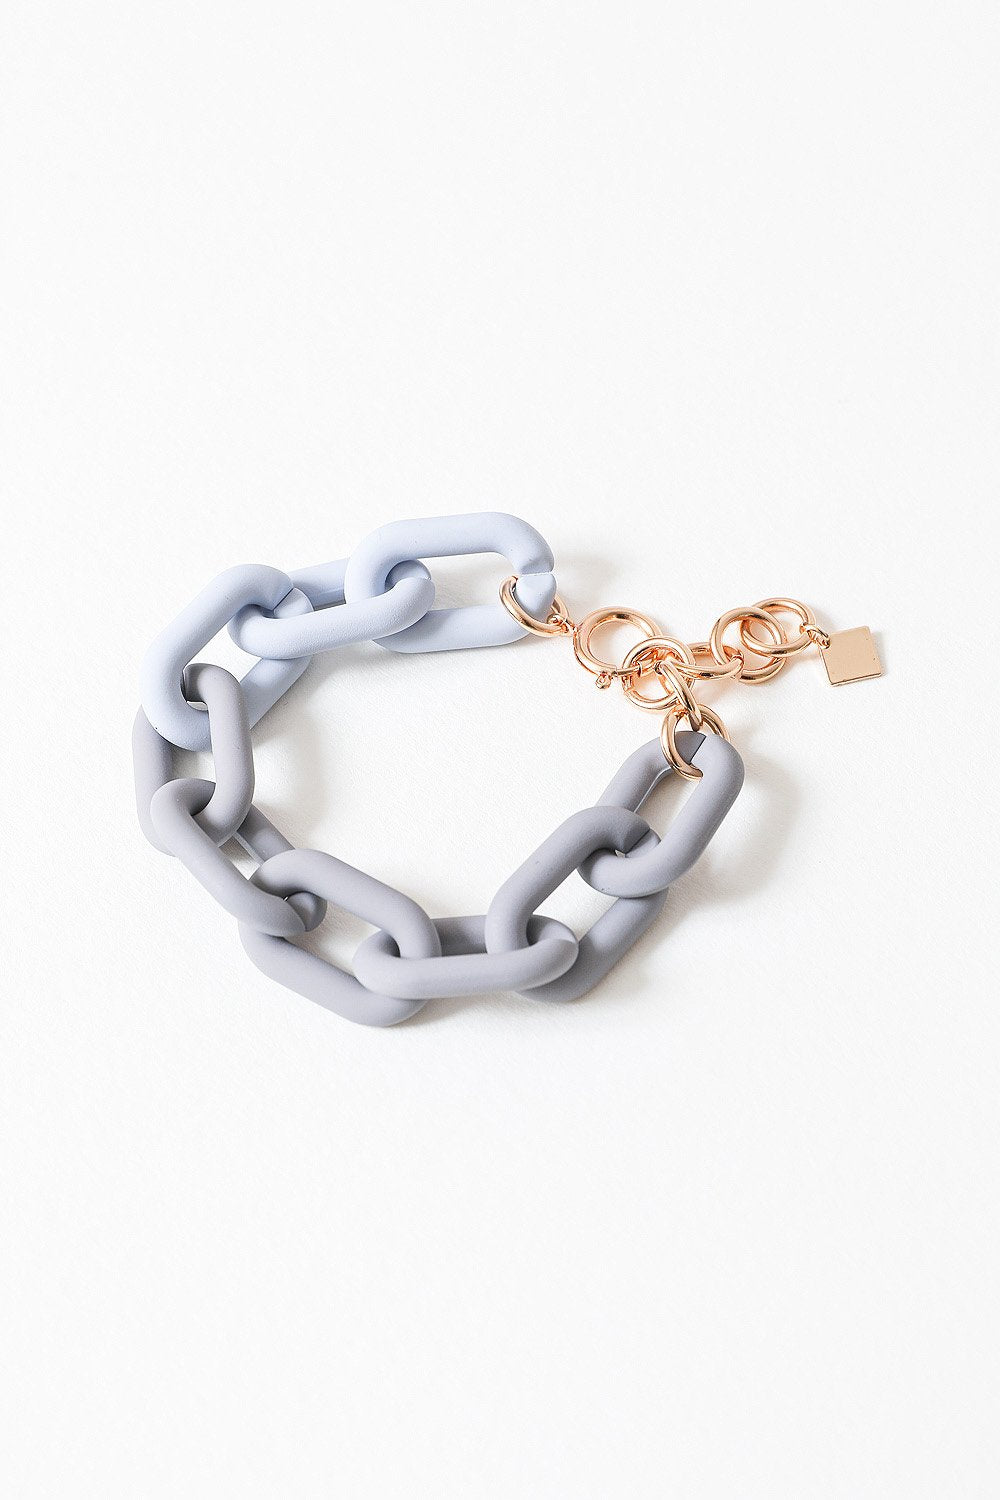 Chunky Linked Chain Bracelet Jewelry Gray